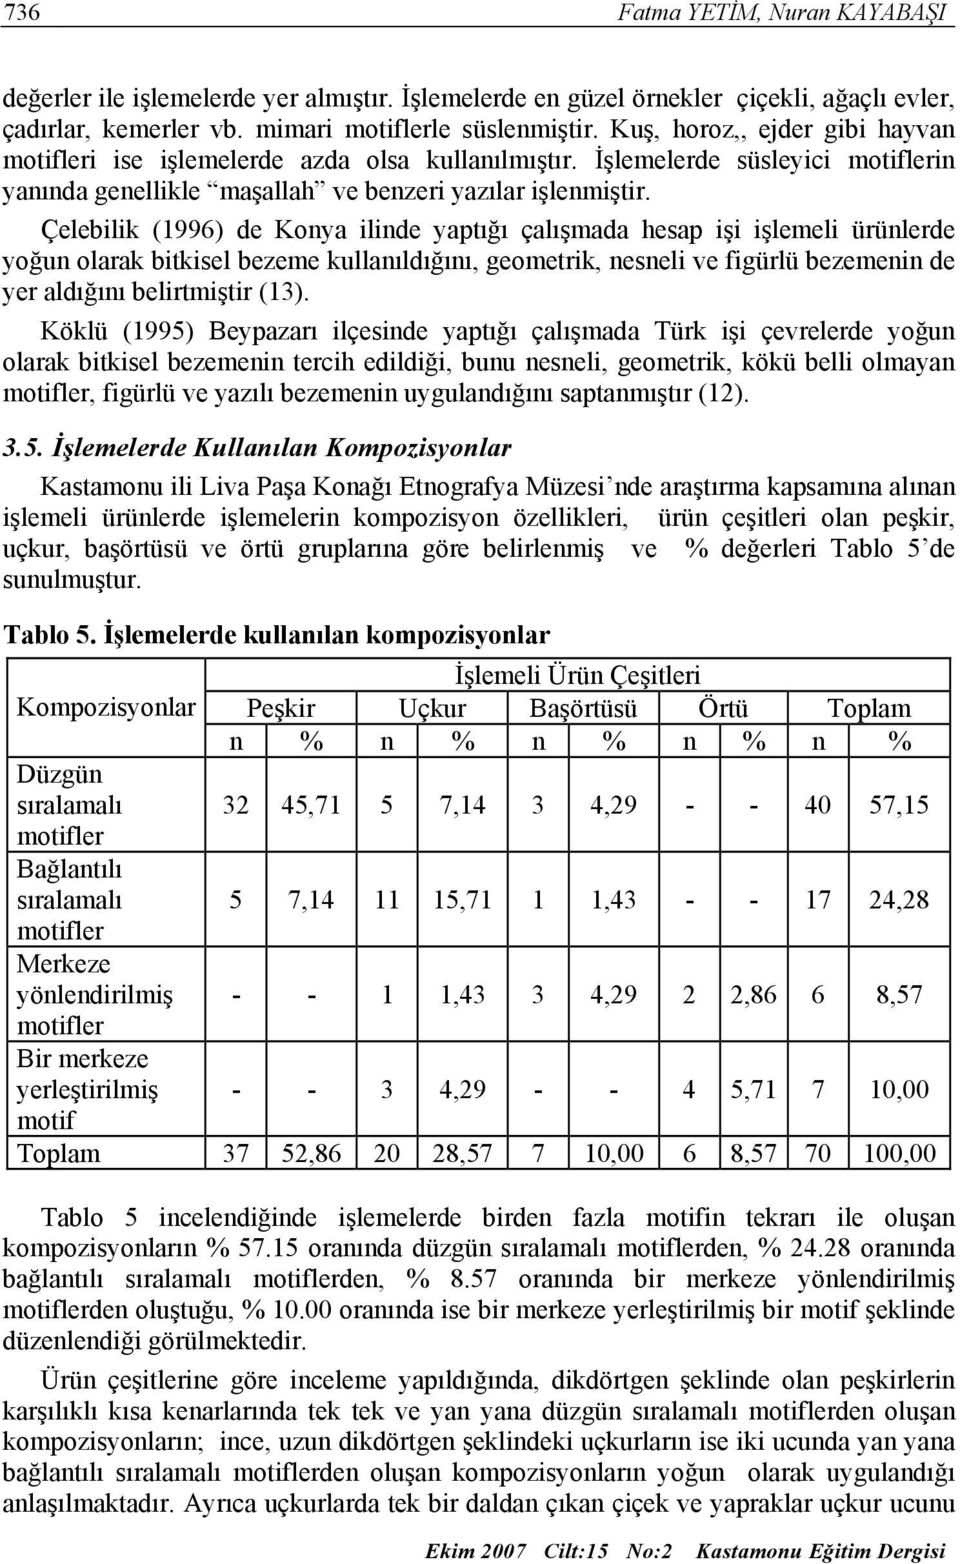 Çelebilik (1996) de Konya ilinde yaptığı çalışmada hesap işi işlemeli ürünlerde yoğun olarak bitkisel bezeme kullanıldığını, geometrik, nesneli ve figürlü bezemenin de yer aldığını belirtmiştir (13).